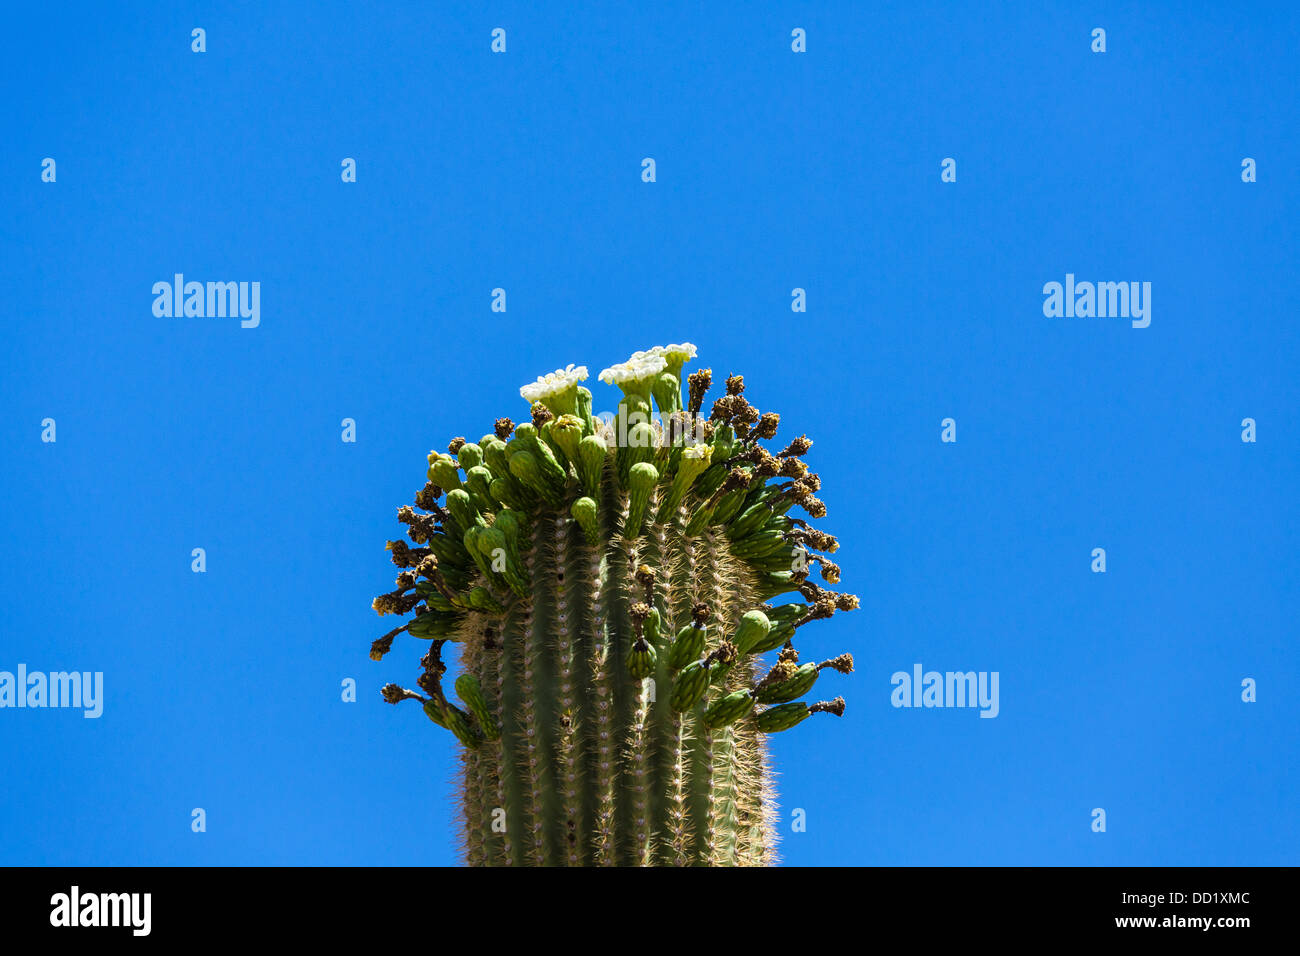 La floraison, Saguaro cactus Saguaro National Park West, Tucson, Arizona, USA Banque D'Images